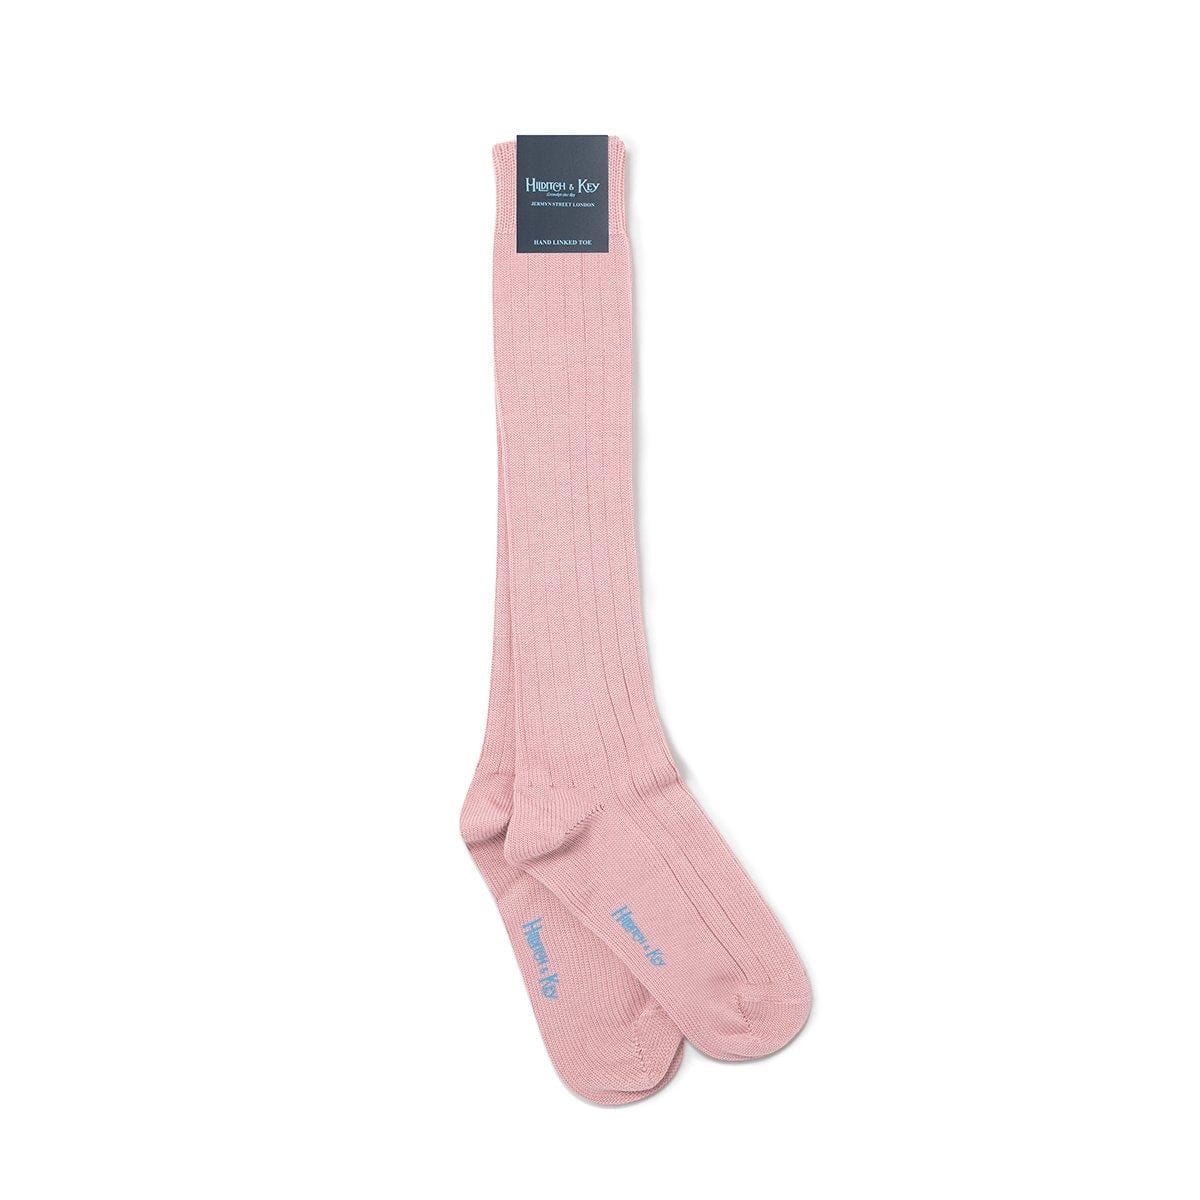 Long Pink Heavy Sports Wool Socks